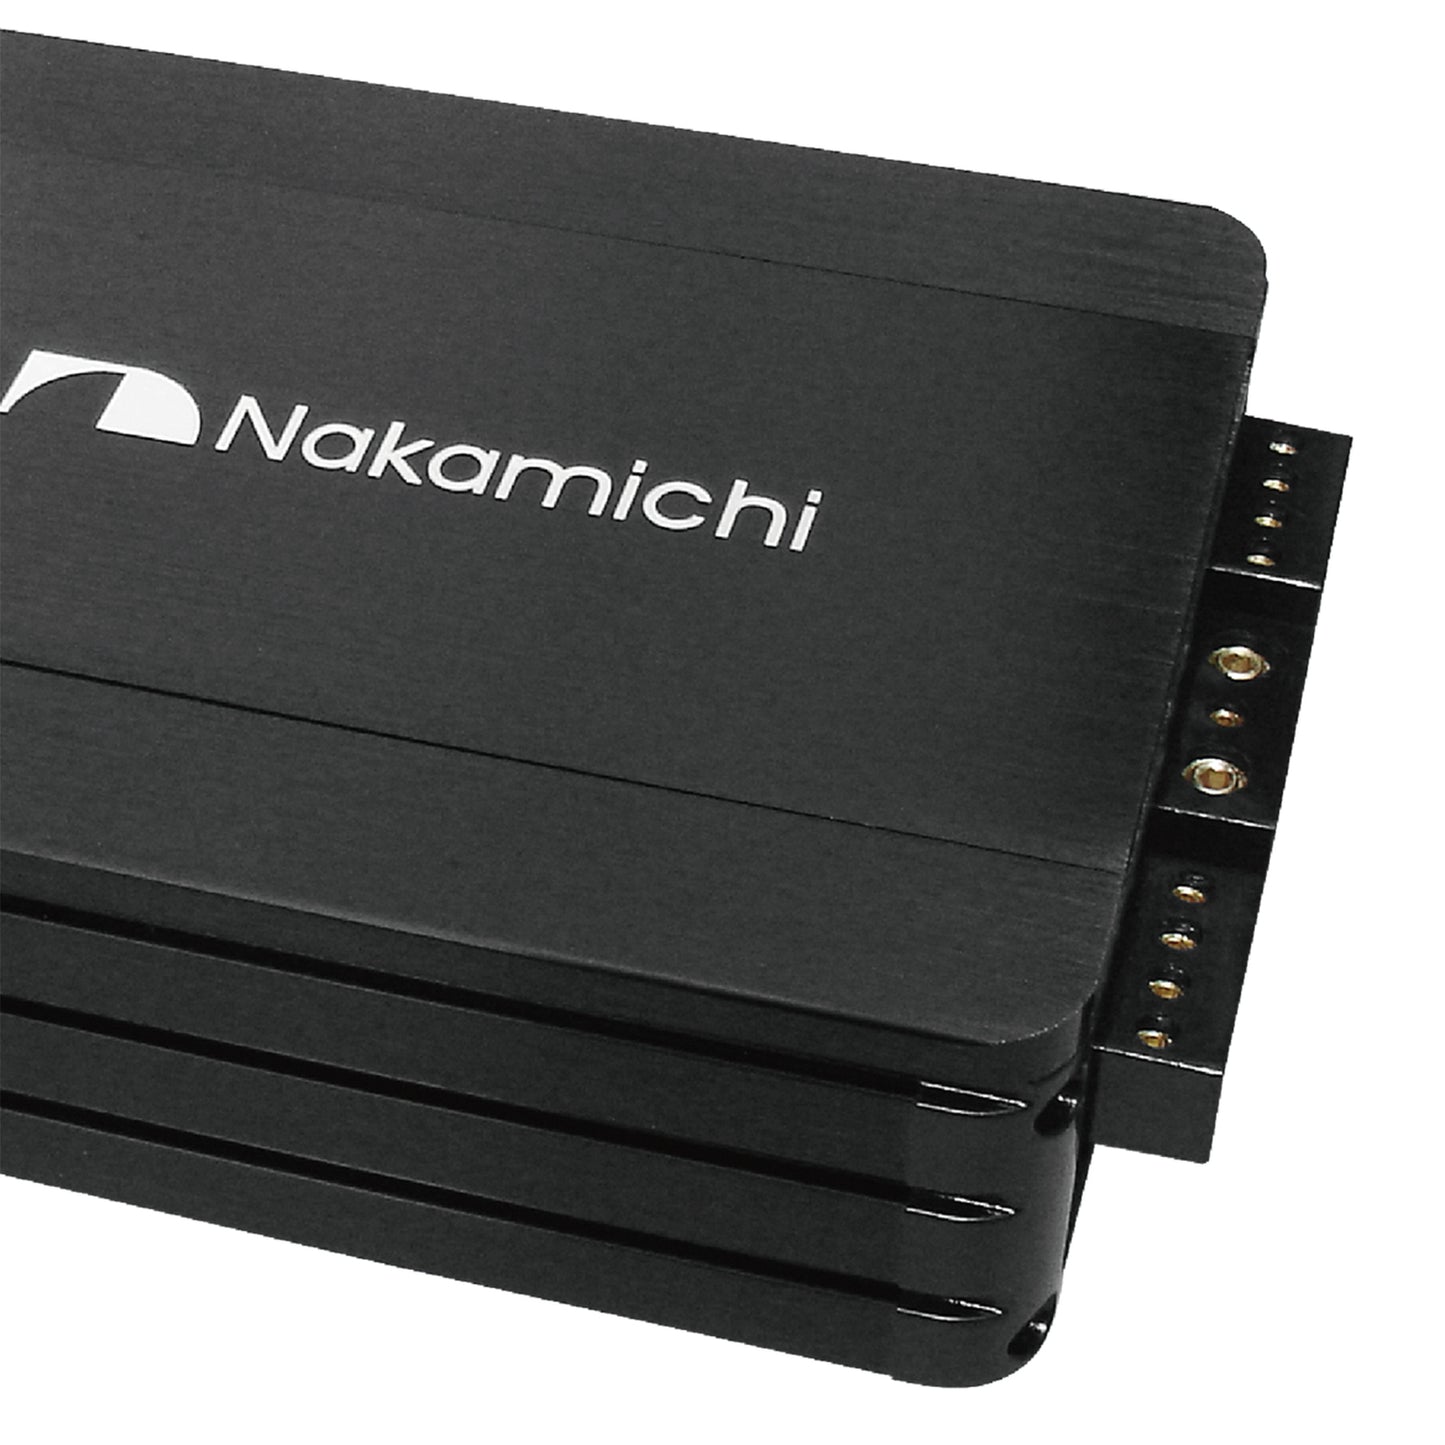 Amplificador Nakamichi NHMD600.1